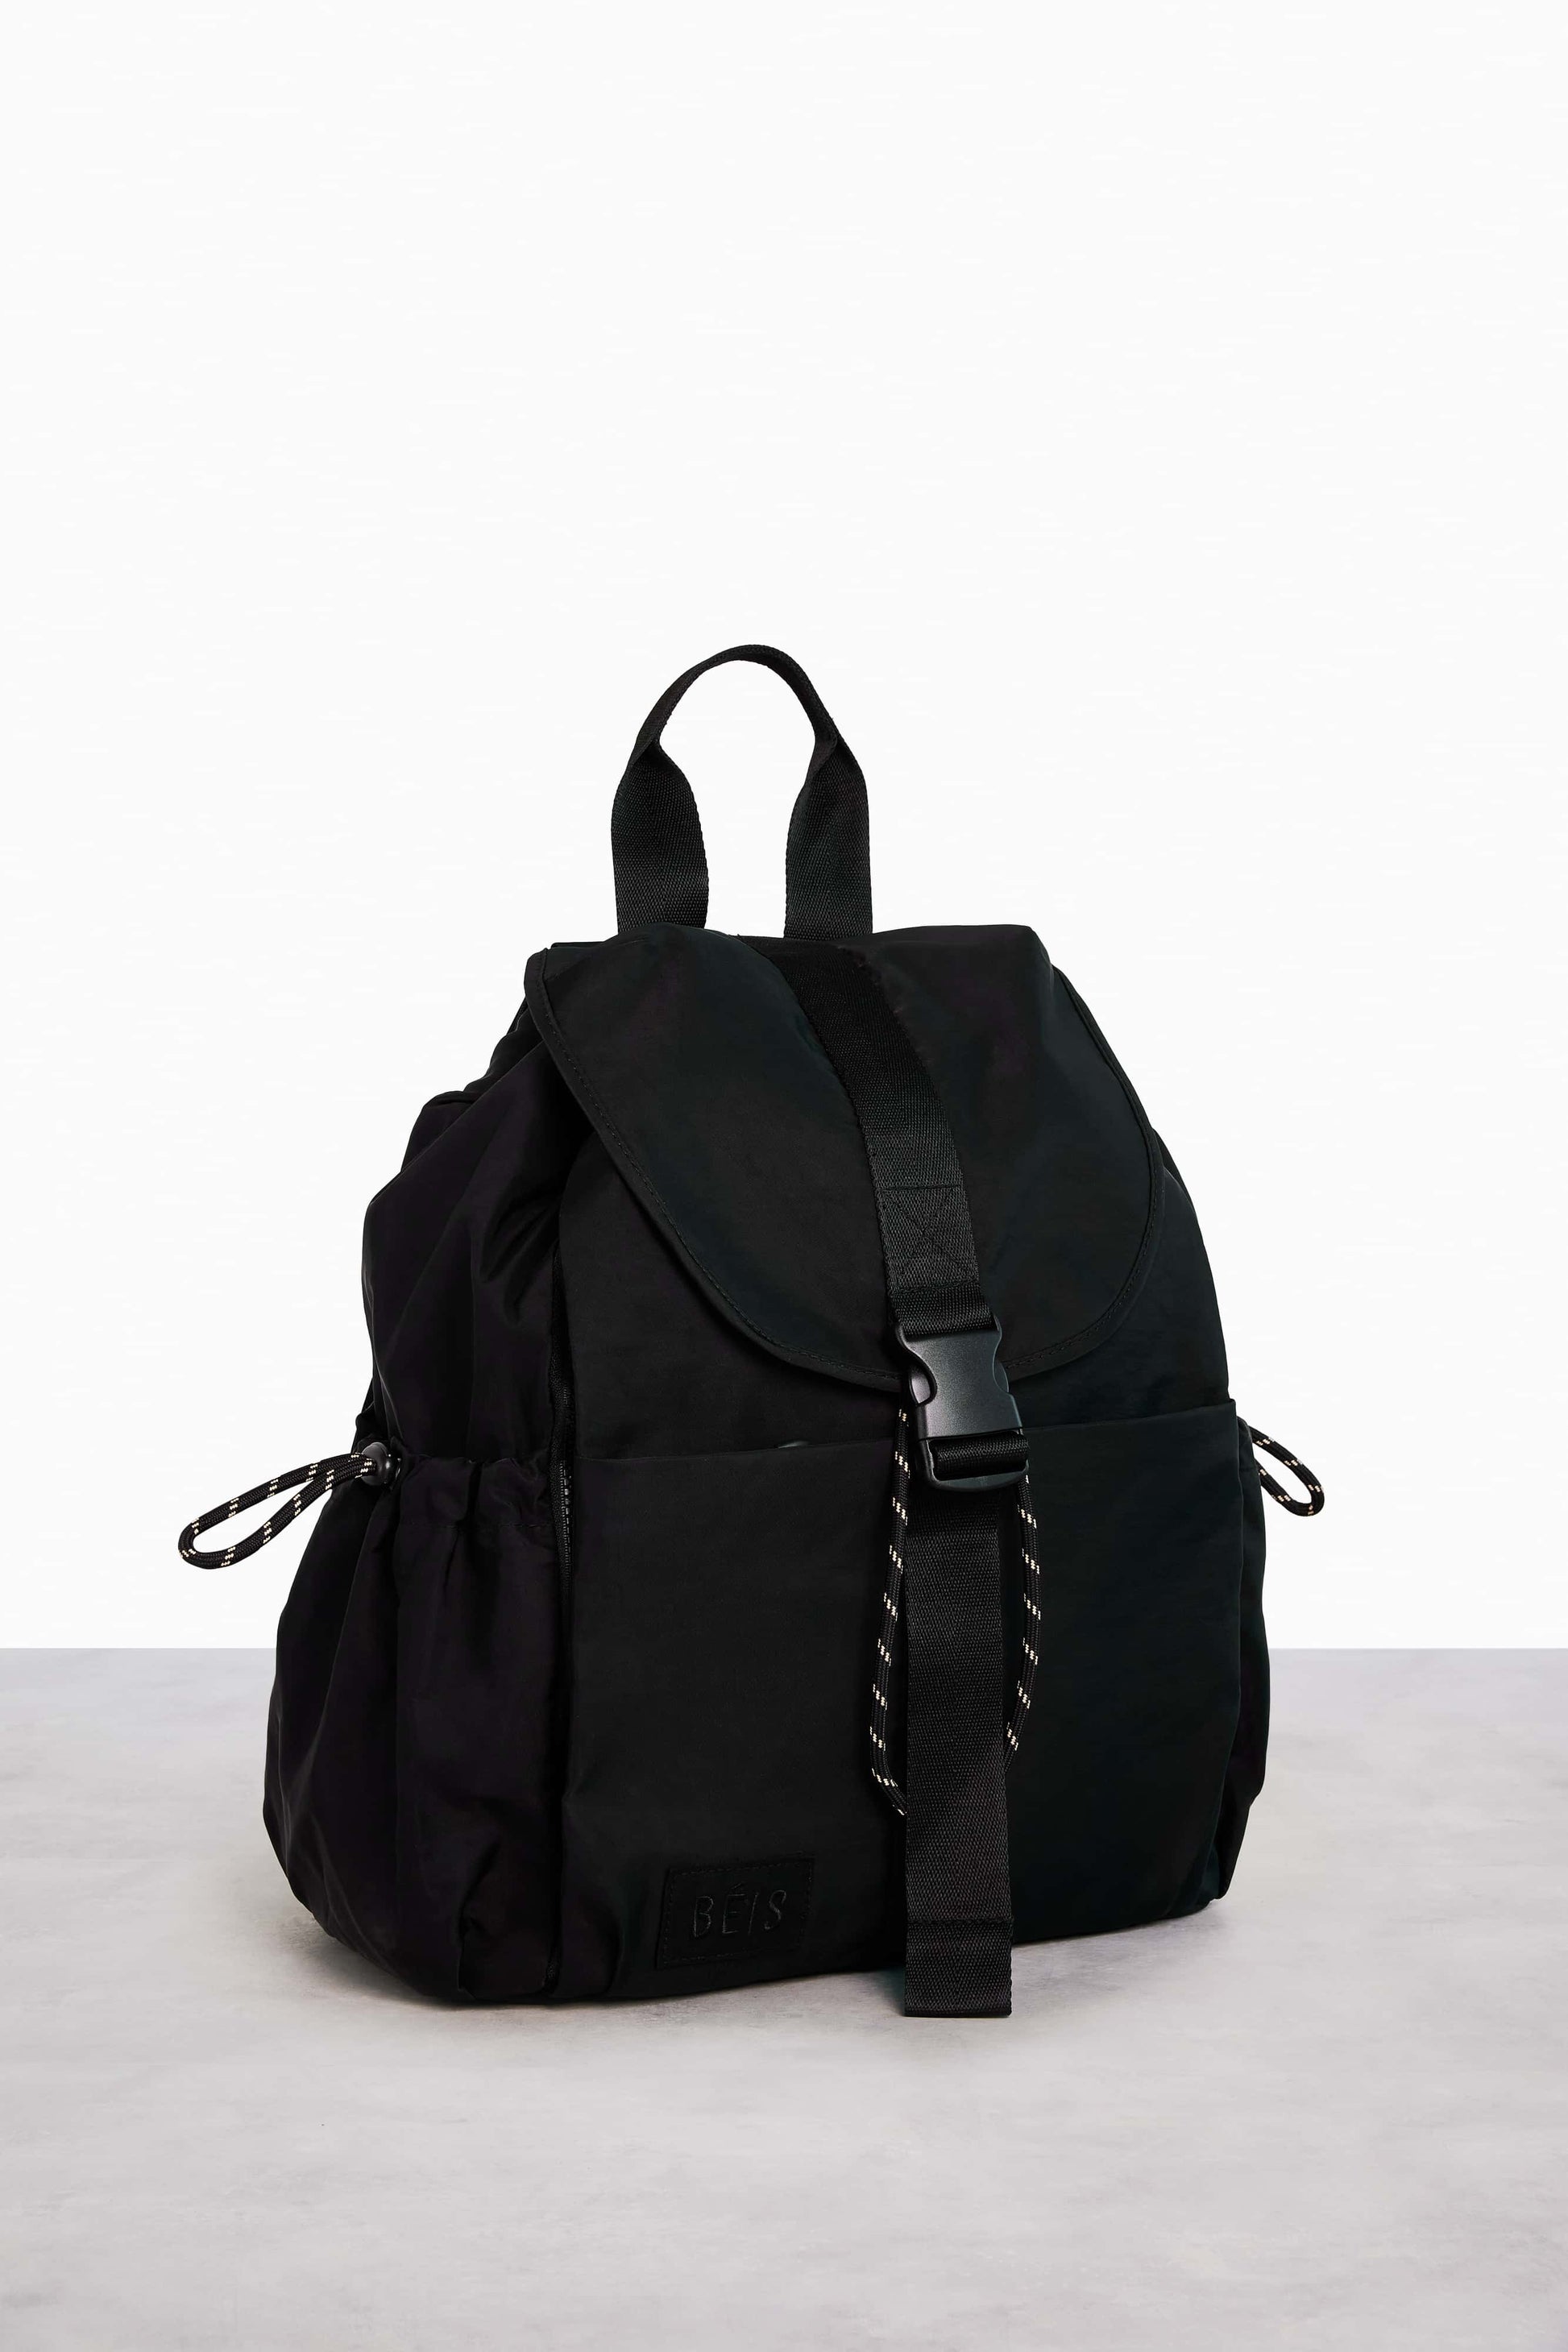 Db the Fjäll 20L Backpack Black - Sportís.is